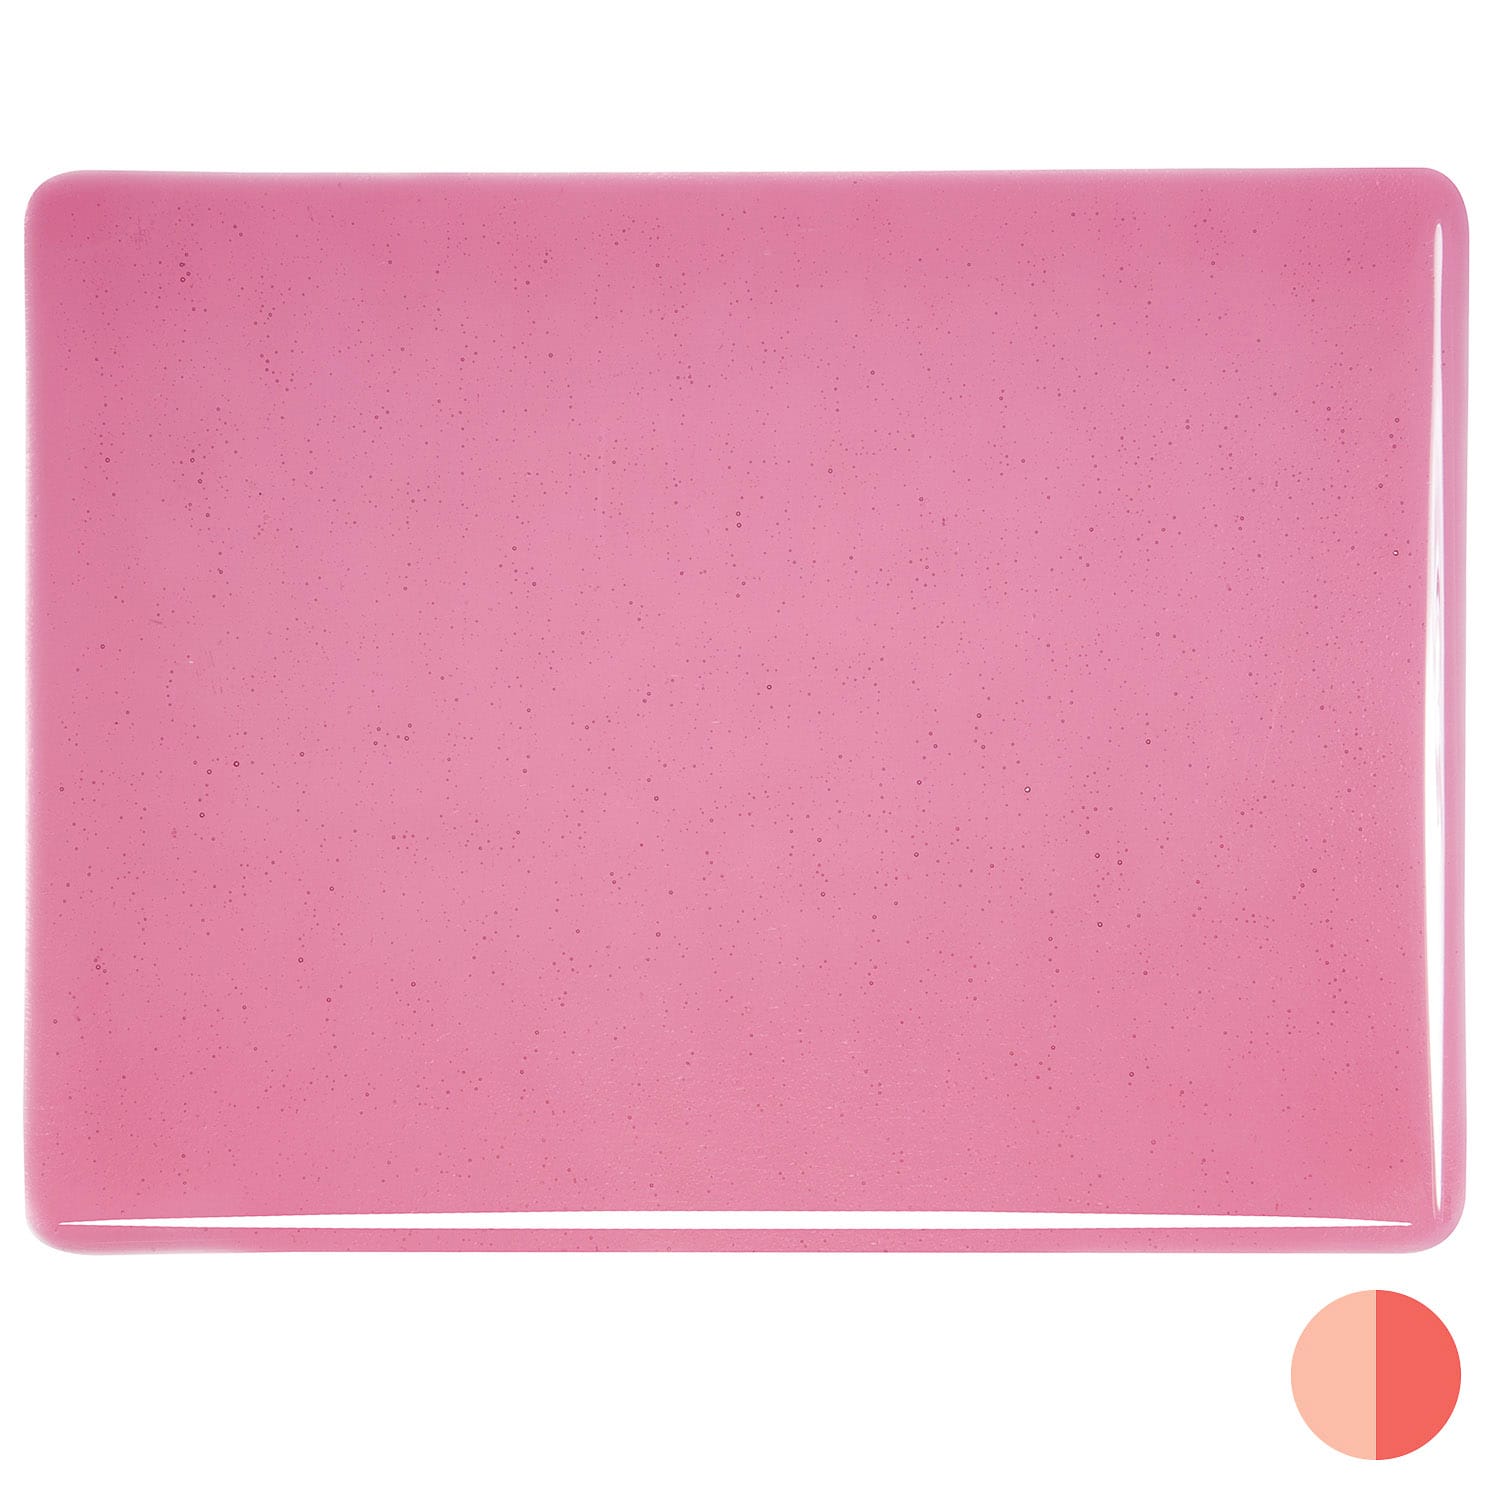 Bullseye COE90 Fusing Glass 001215 Light Pink Handy Sheet